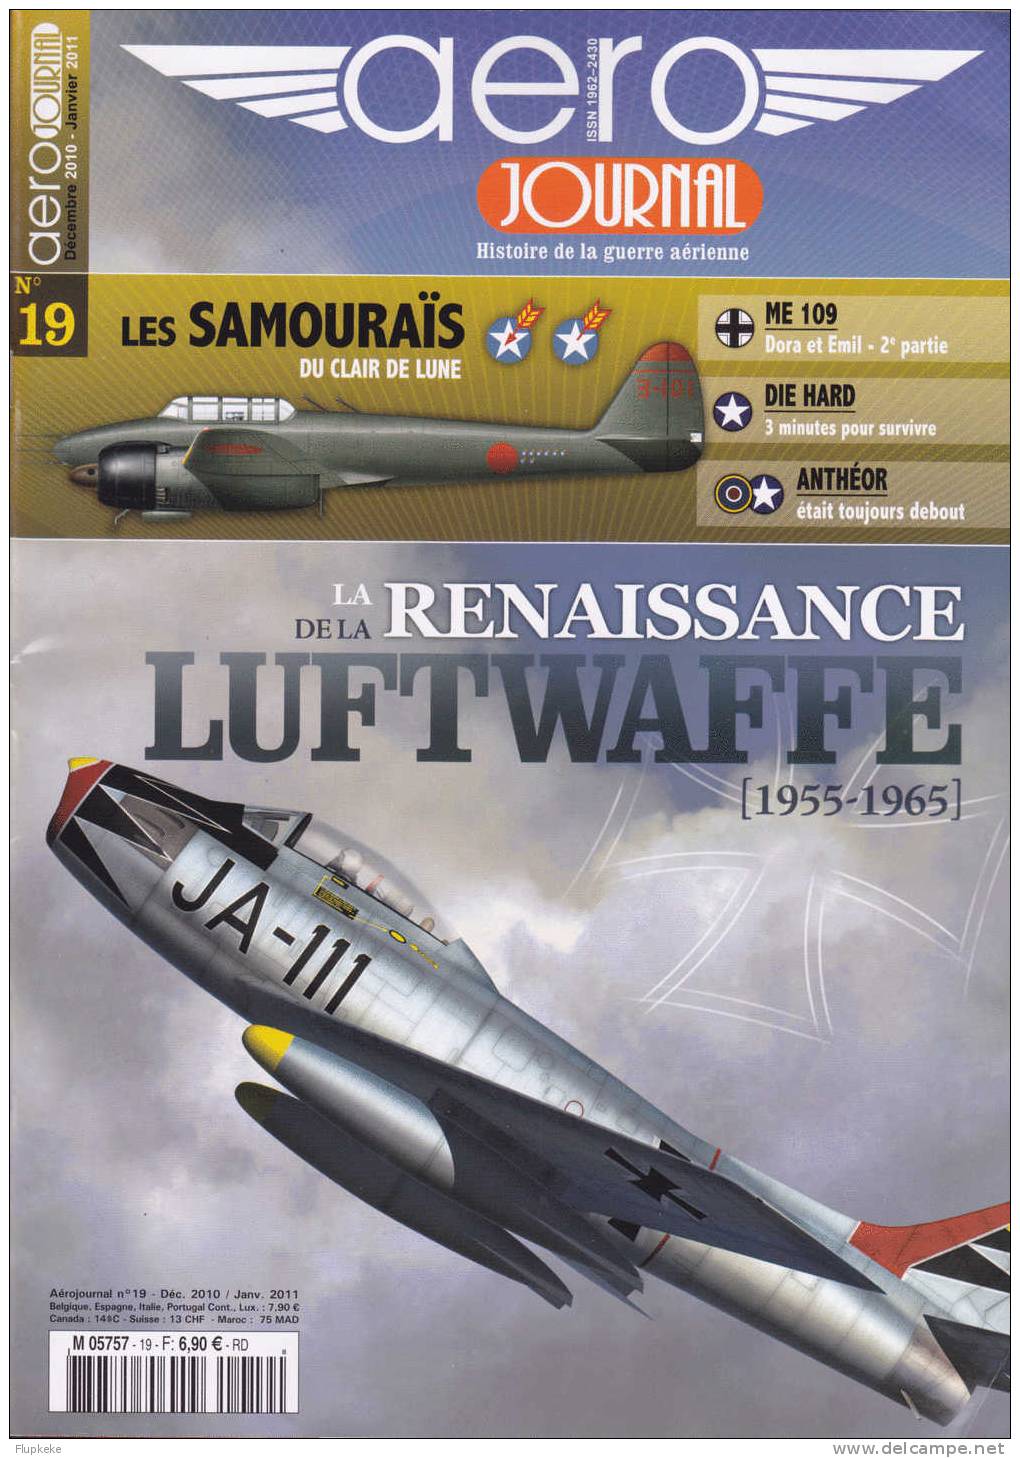 Aéro Journal 19 Décembre 2010-janvier 2011 La Renaissance De La Luftwaffe 1955-1965 - Aviation